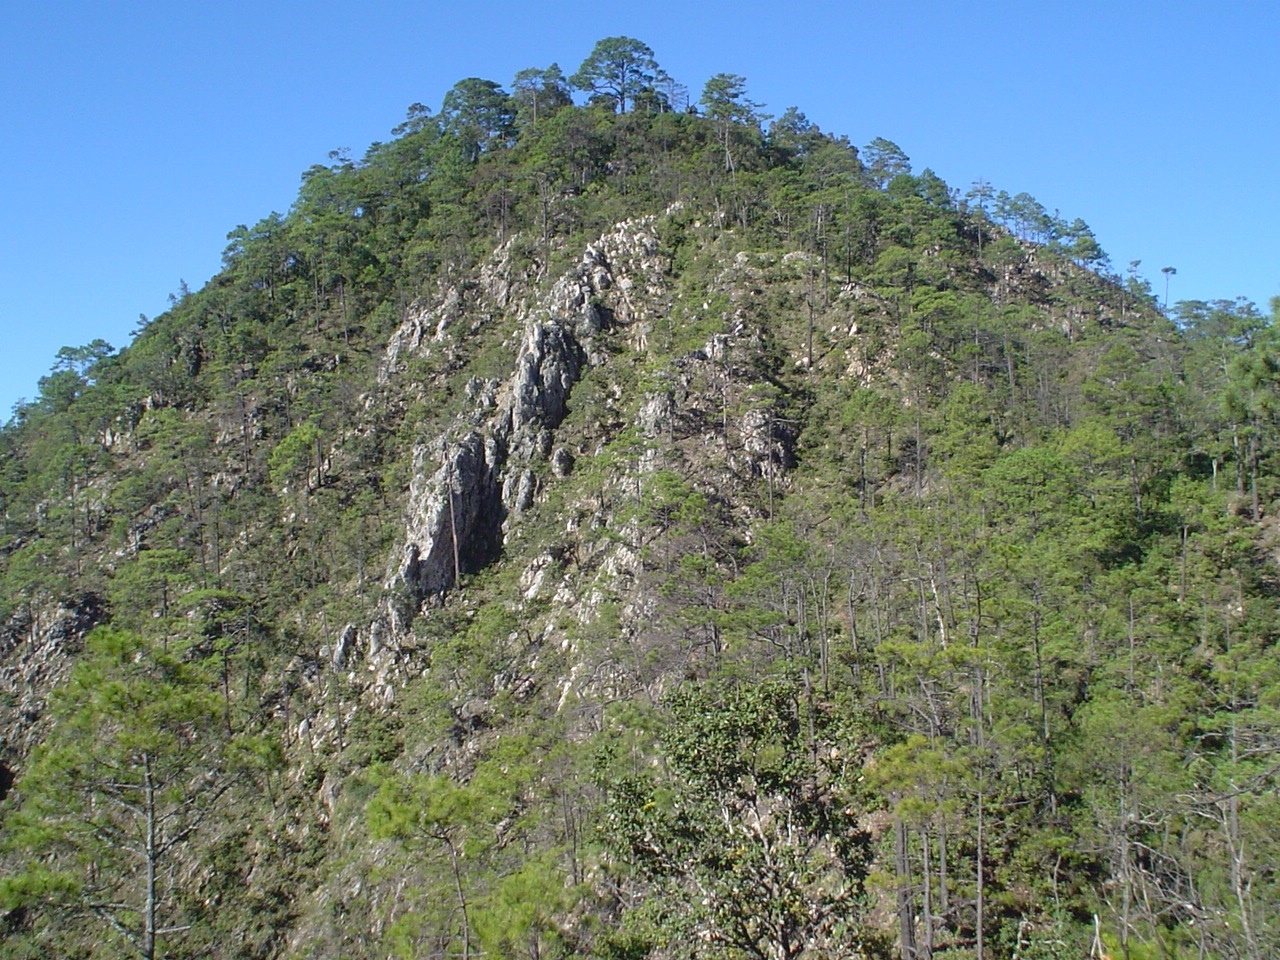 Rock outcrop at Pena Blanca